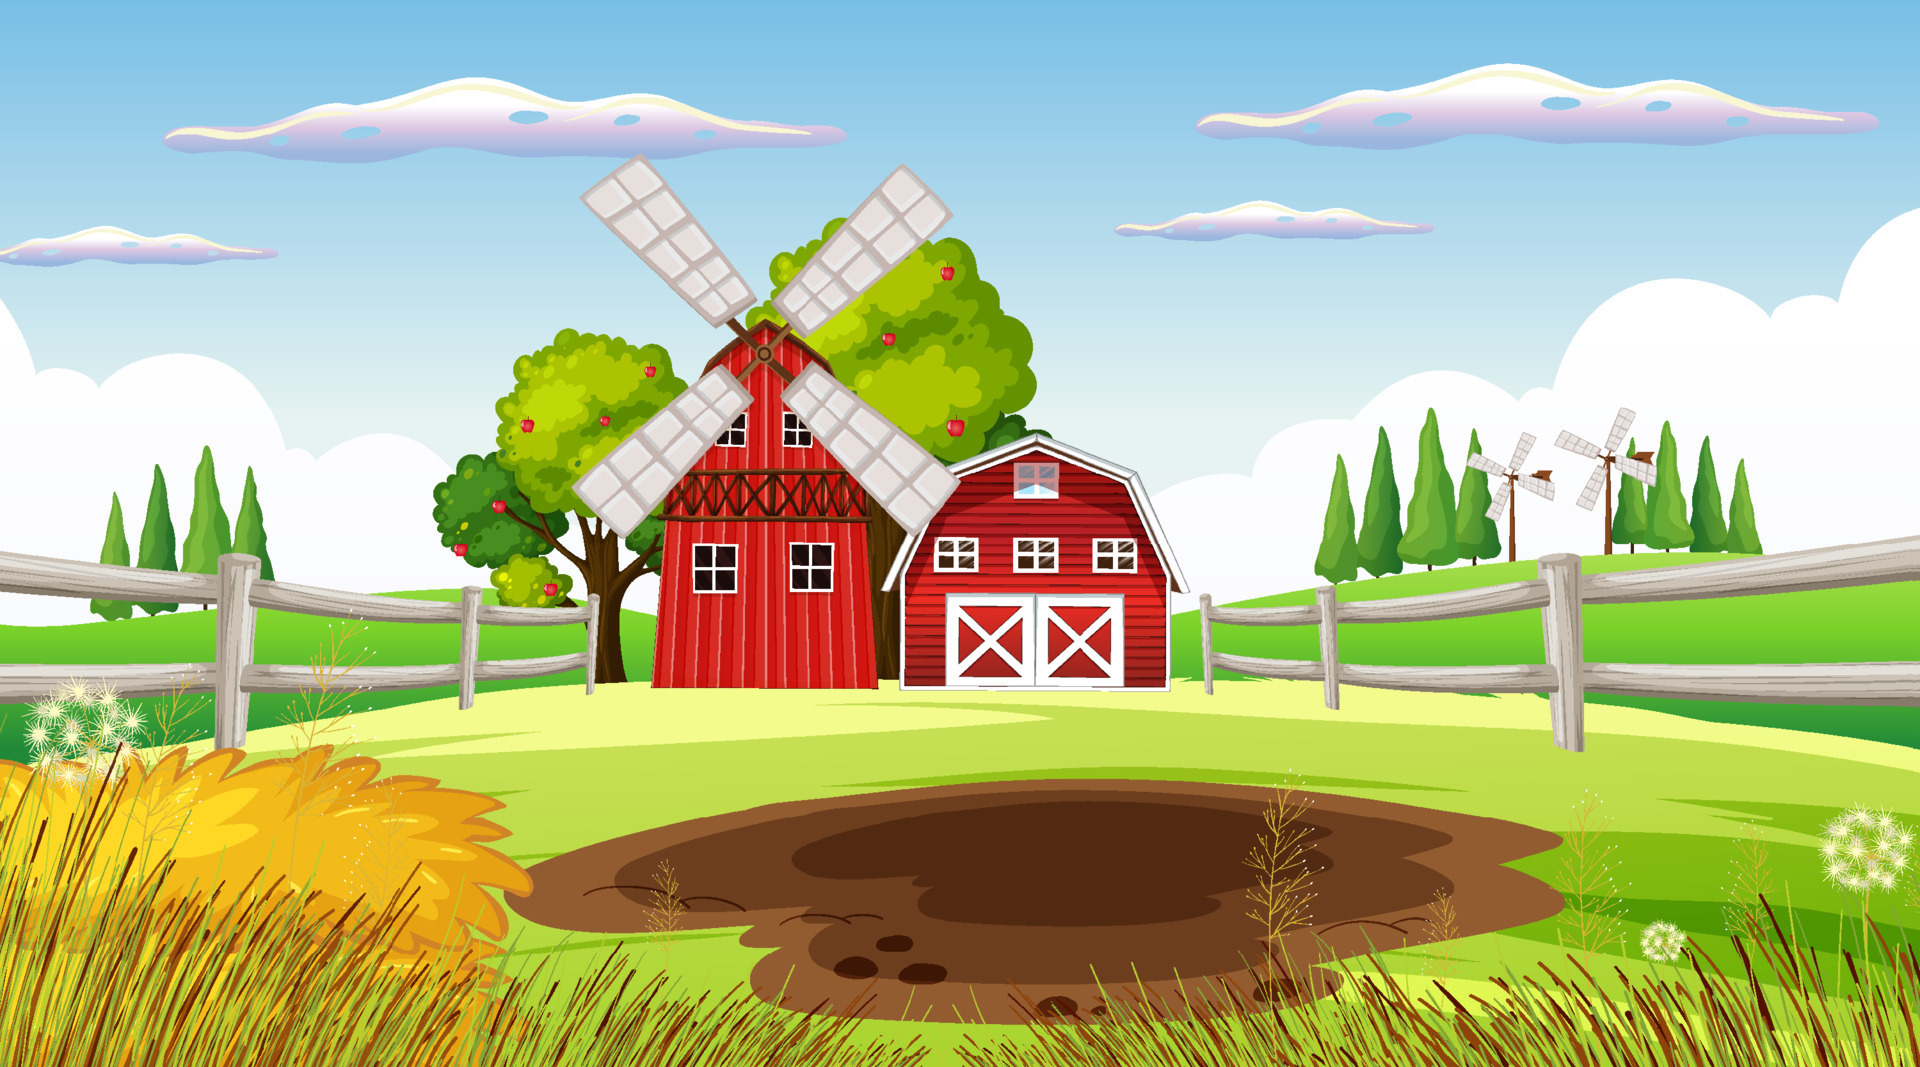 Arriba 186+ imagem farm background animated - Thcshoanghoatham-badinh ...